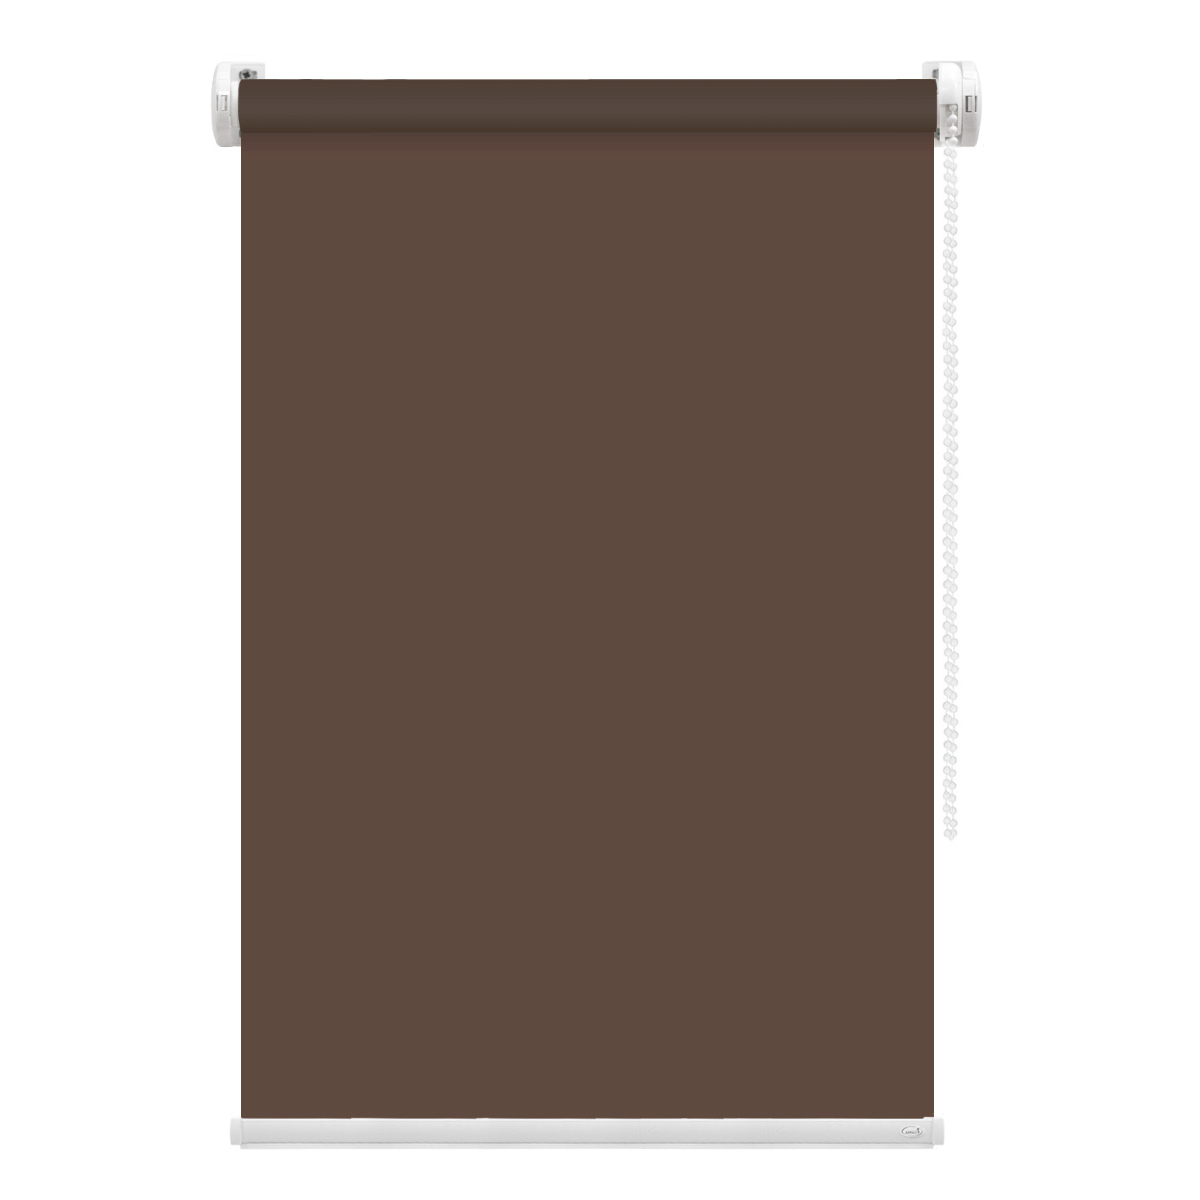 Рулонная штора FixLine Amigo Basic коричневая 90х160 см рулонная штора fixline amigo basic коричневая 65х160 см